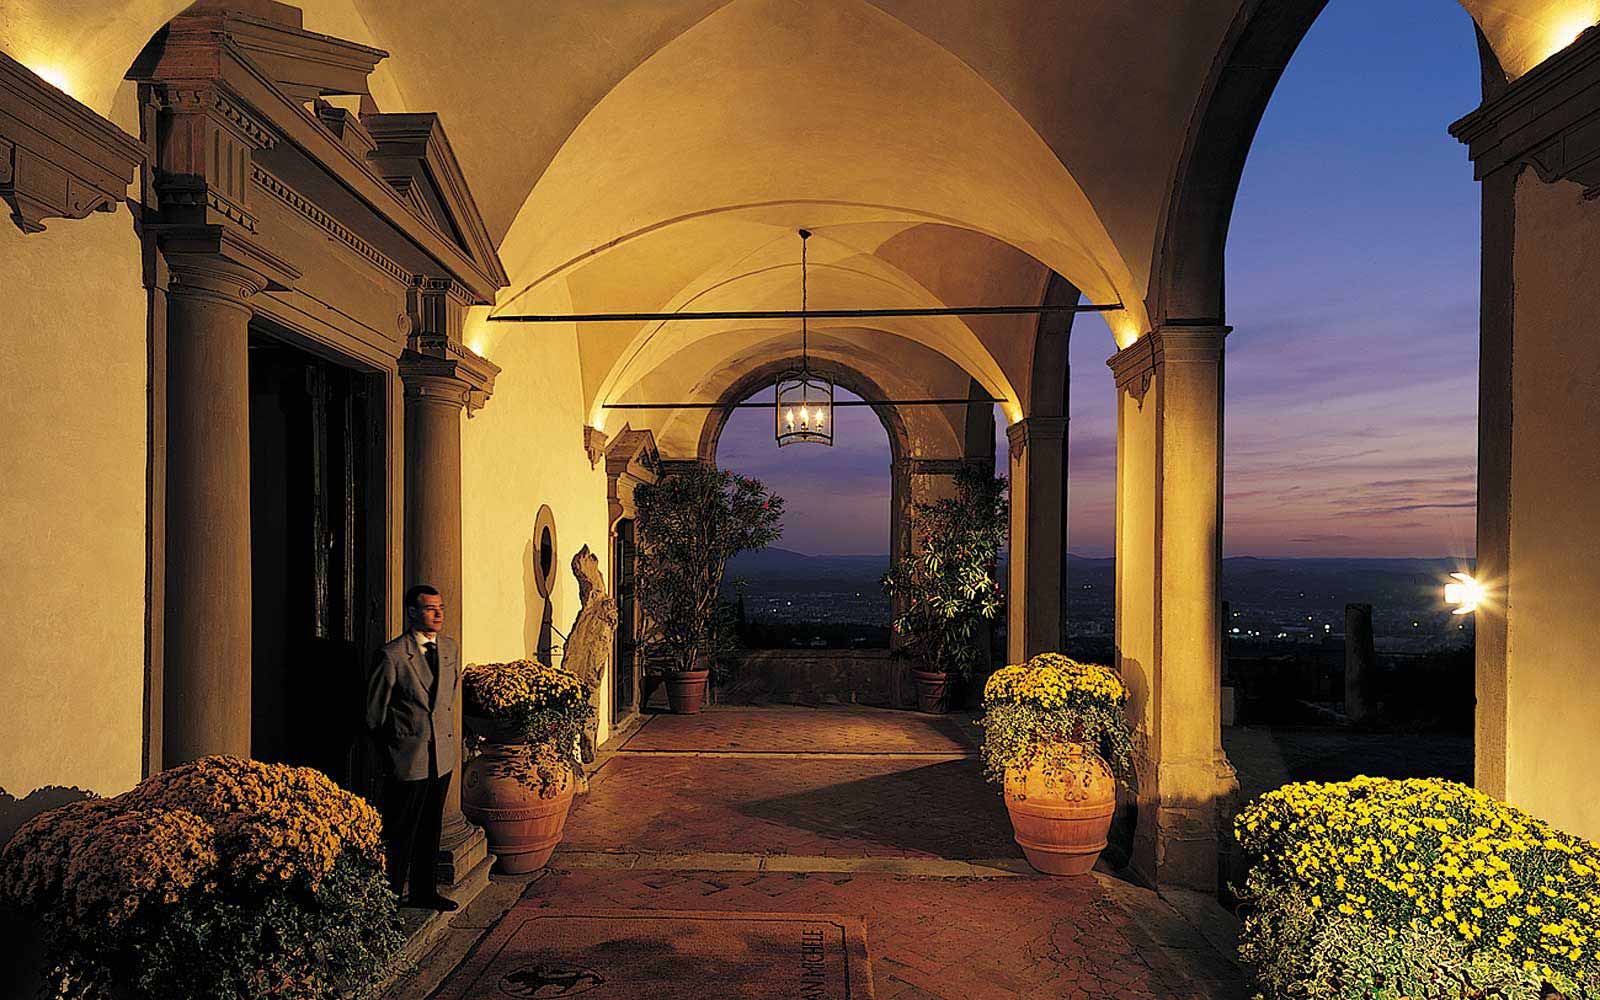 Entrance to the Belmond Villa San Michele